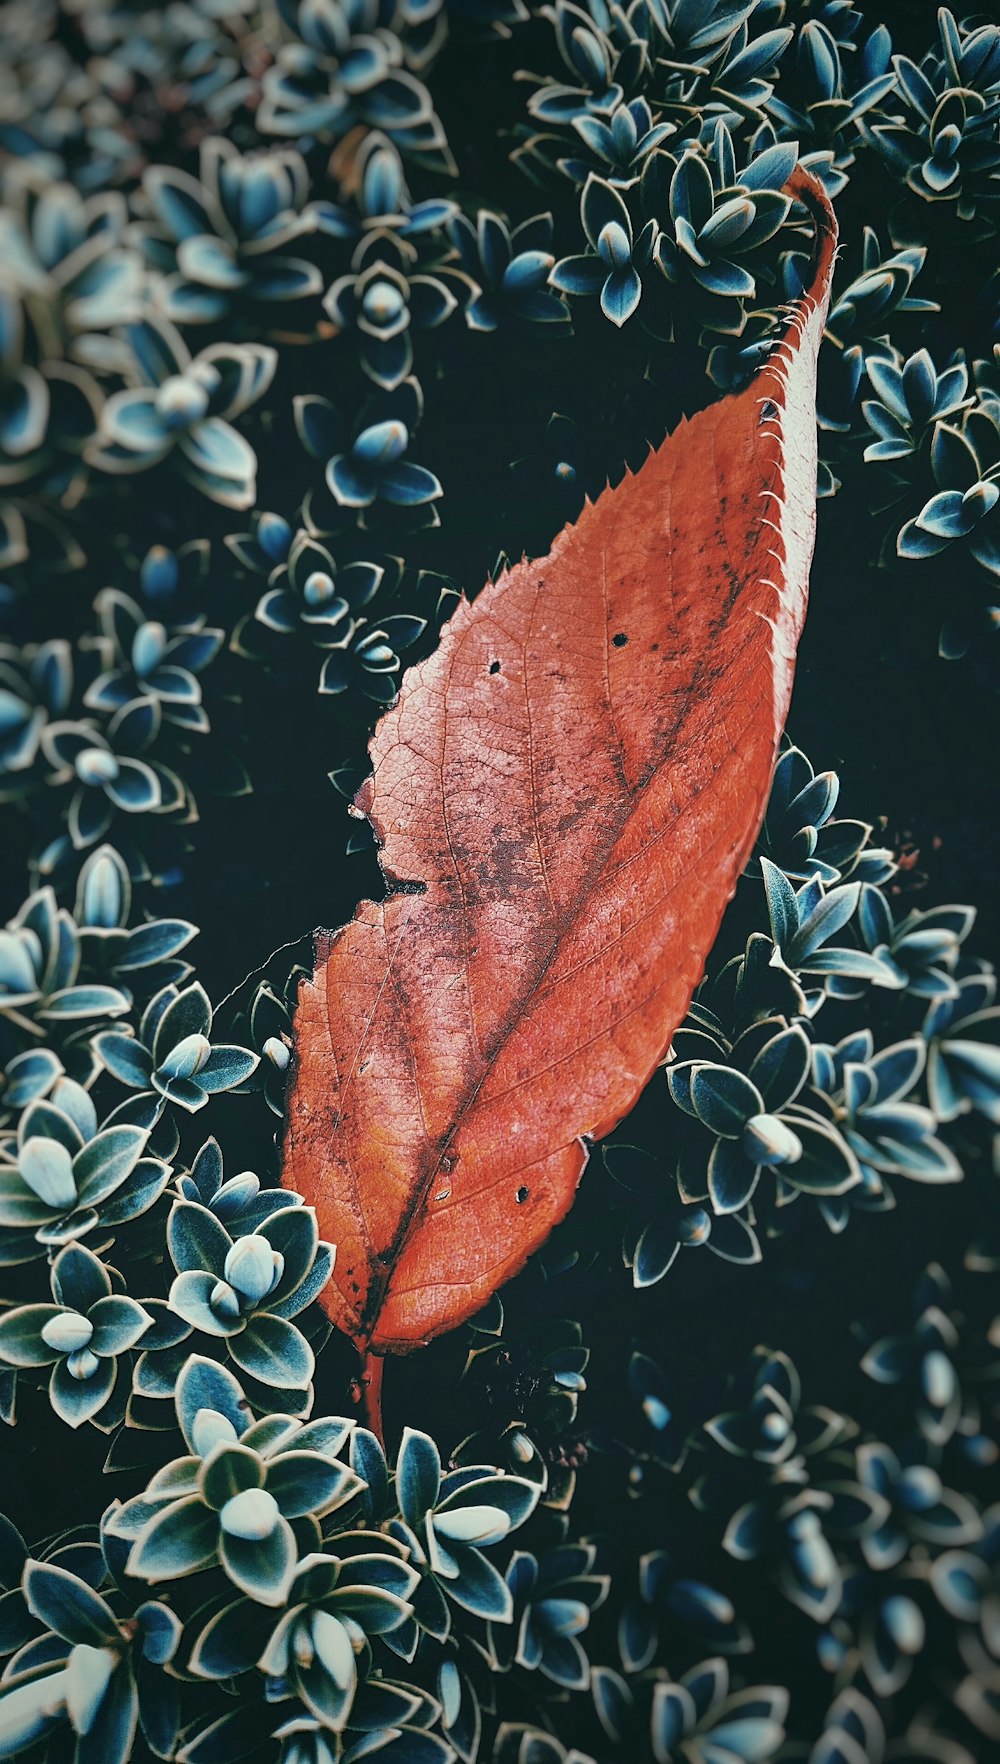 An orange leaf sitting in a bush.